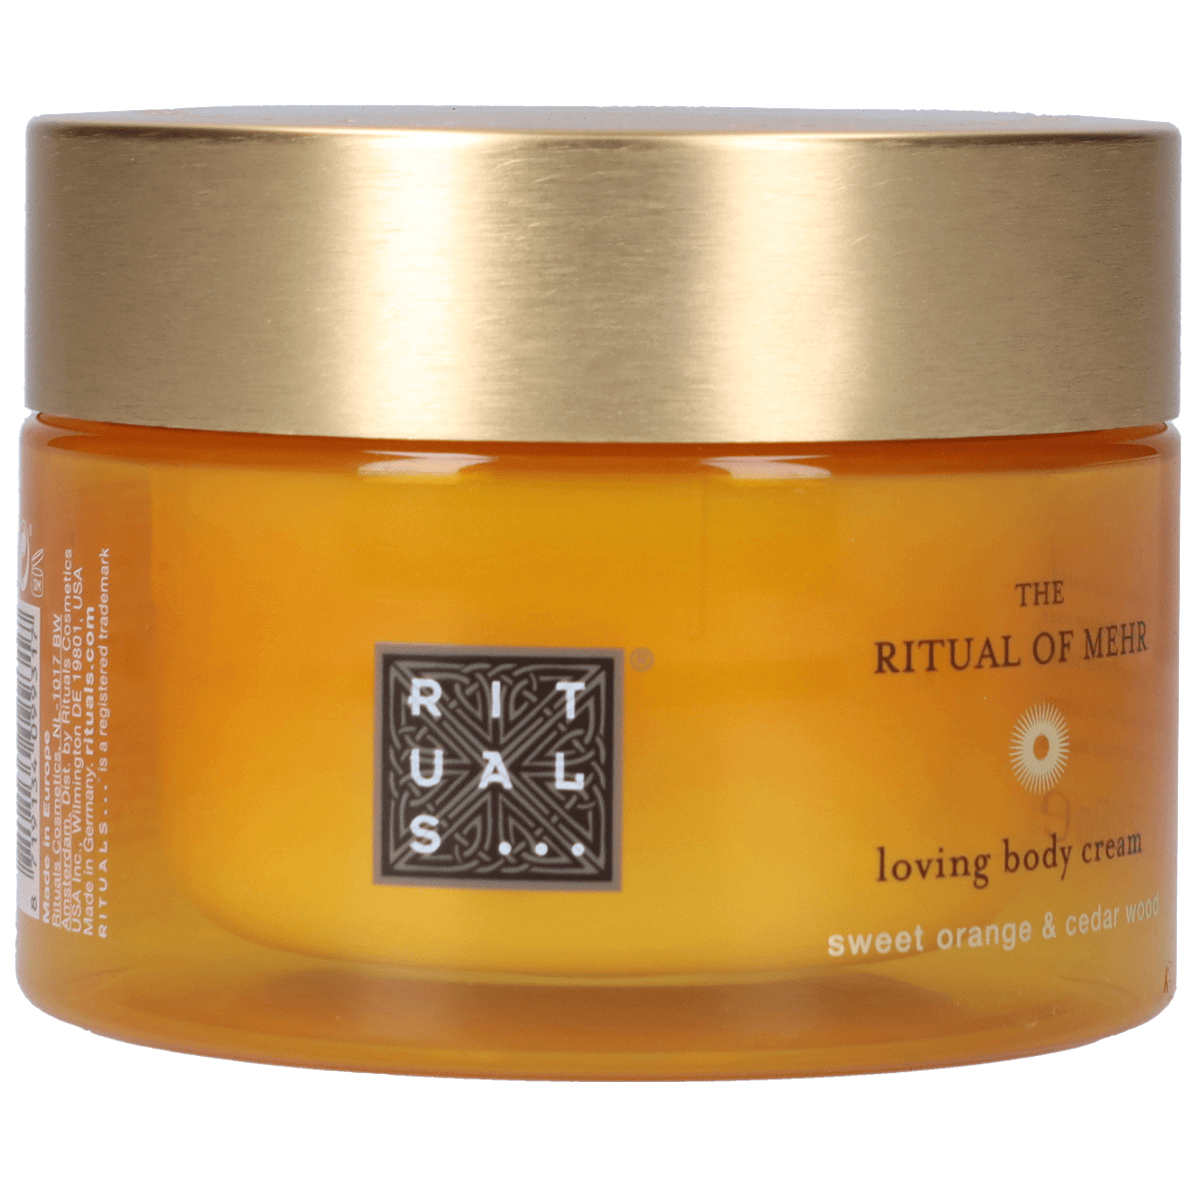 Rituals The Ritual of Mehr Body Cream 220 ml günstig online kaufen